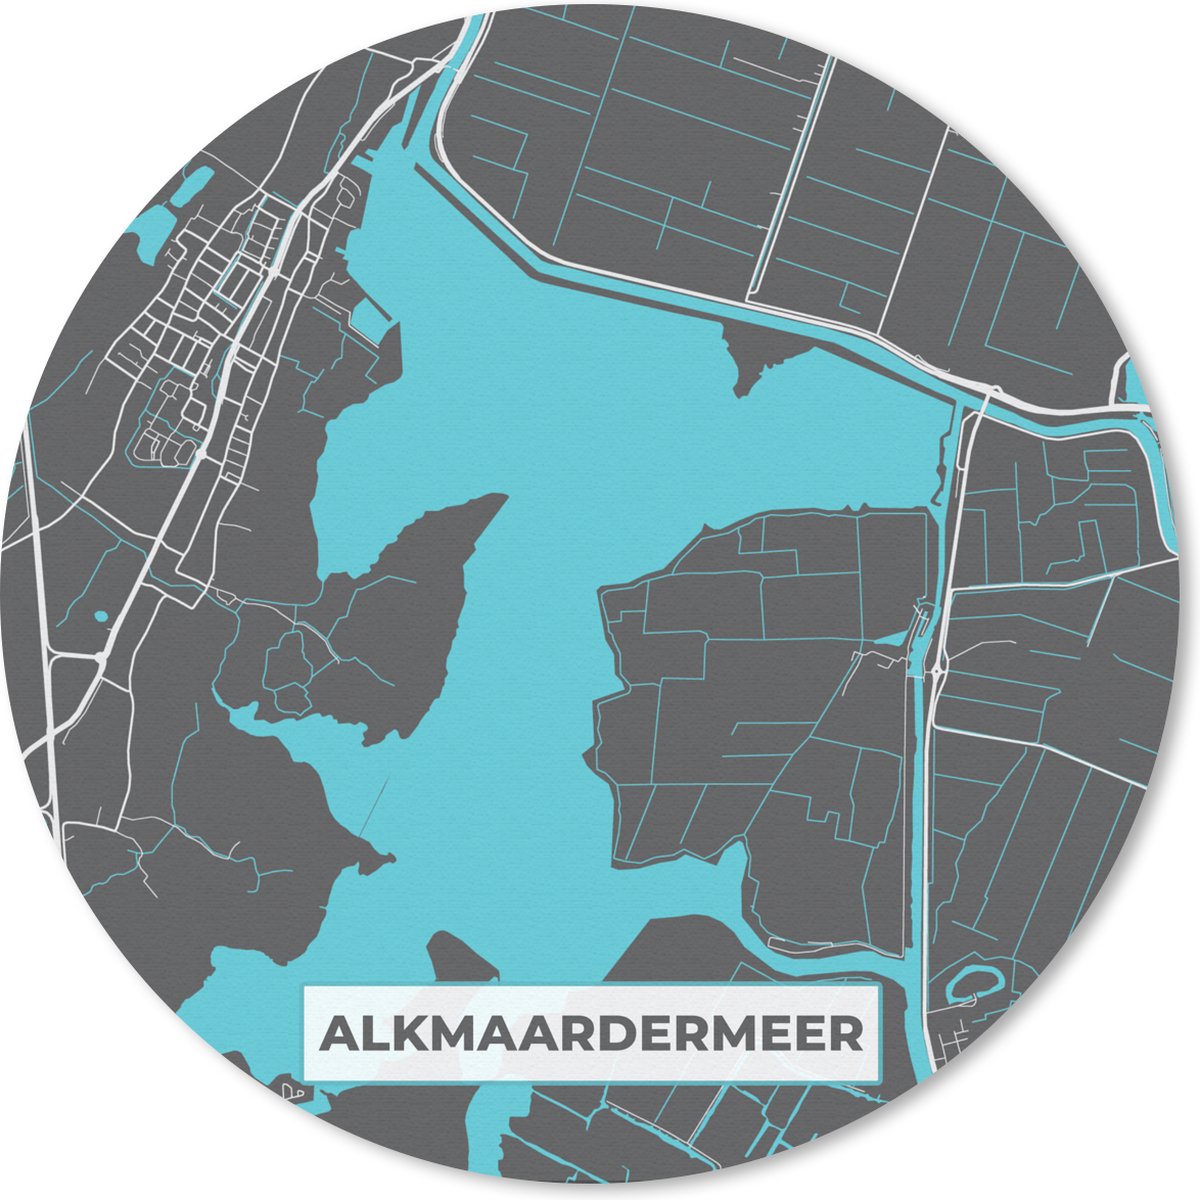 Muismat - Mousepad - Rond - Nederland - Alkmaardermeer - Water - Stadskaart - Plattegrond - Kaart - 30x30 cm - Ronde muismat